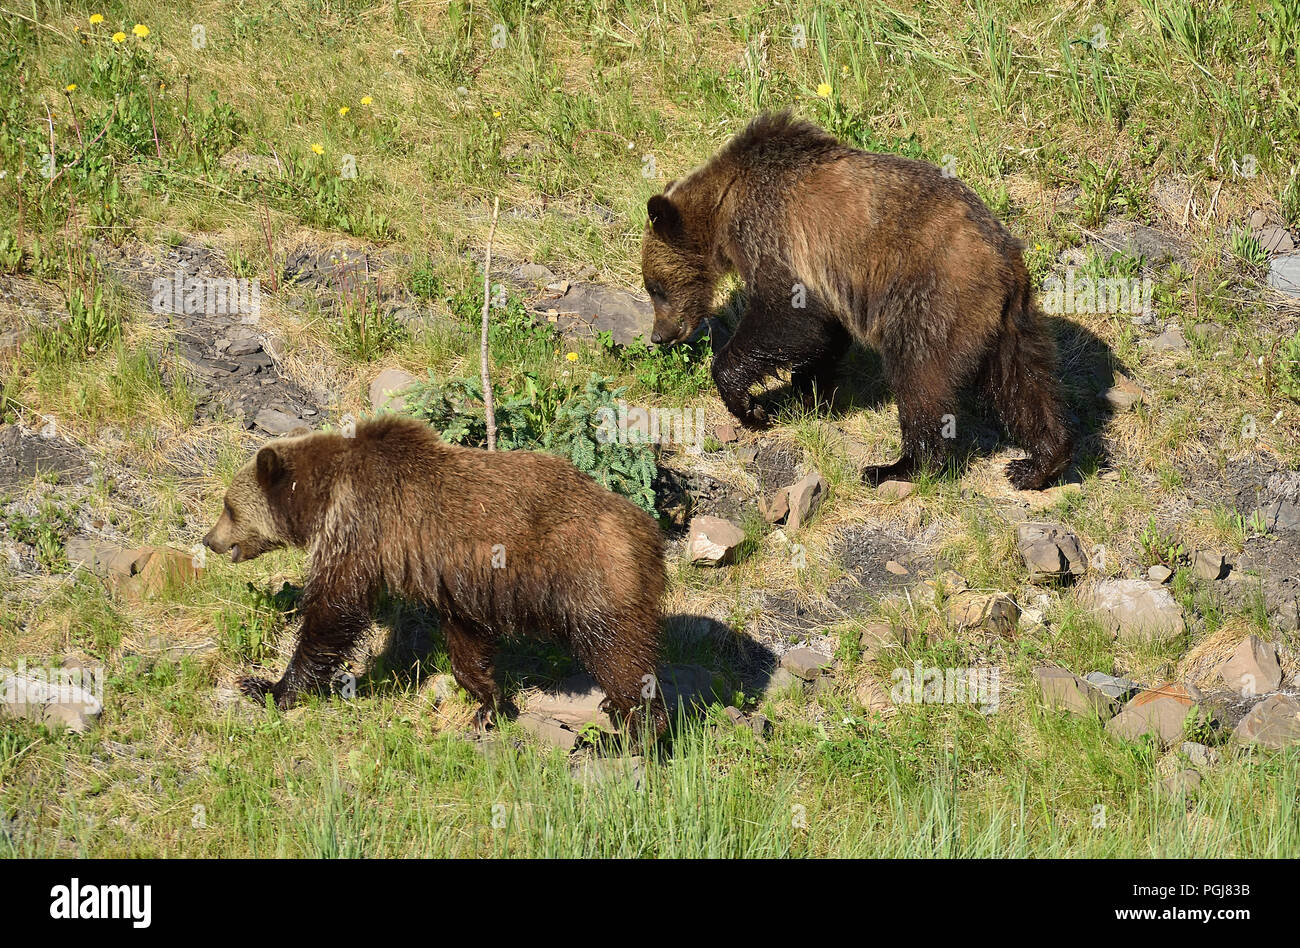 Zwei grizzlybären "Ursus arctos"; Futter und Fütterung auf grüne Feder Vegetation entlang der felsigen Hügel in ländlichen Alberta, Kanada. Stockfoto